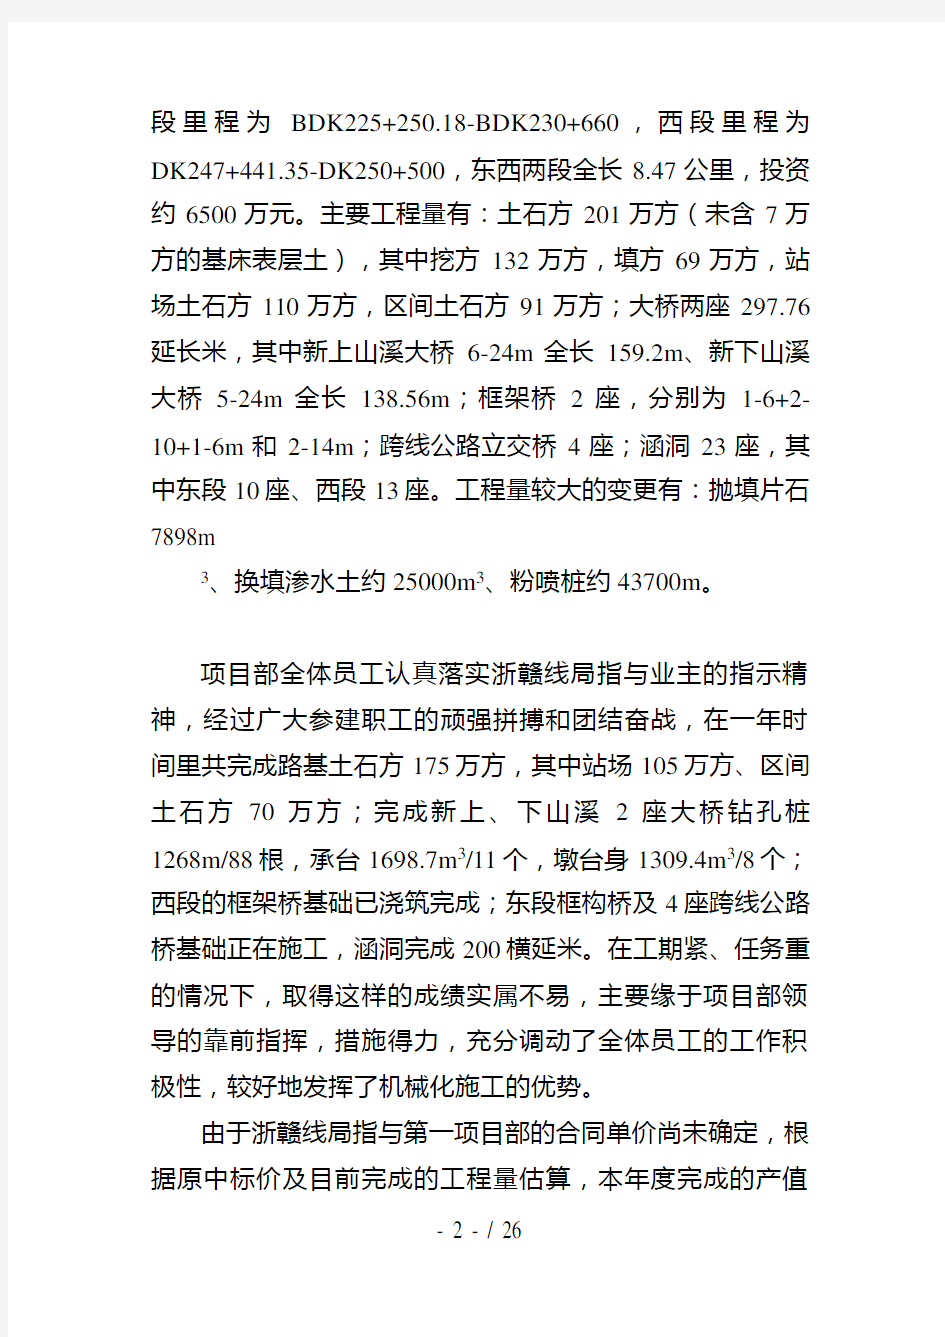 中铁22局集团一公司某某年工作总结(DOC 25页)